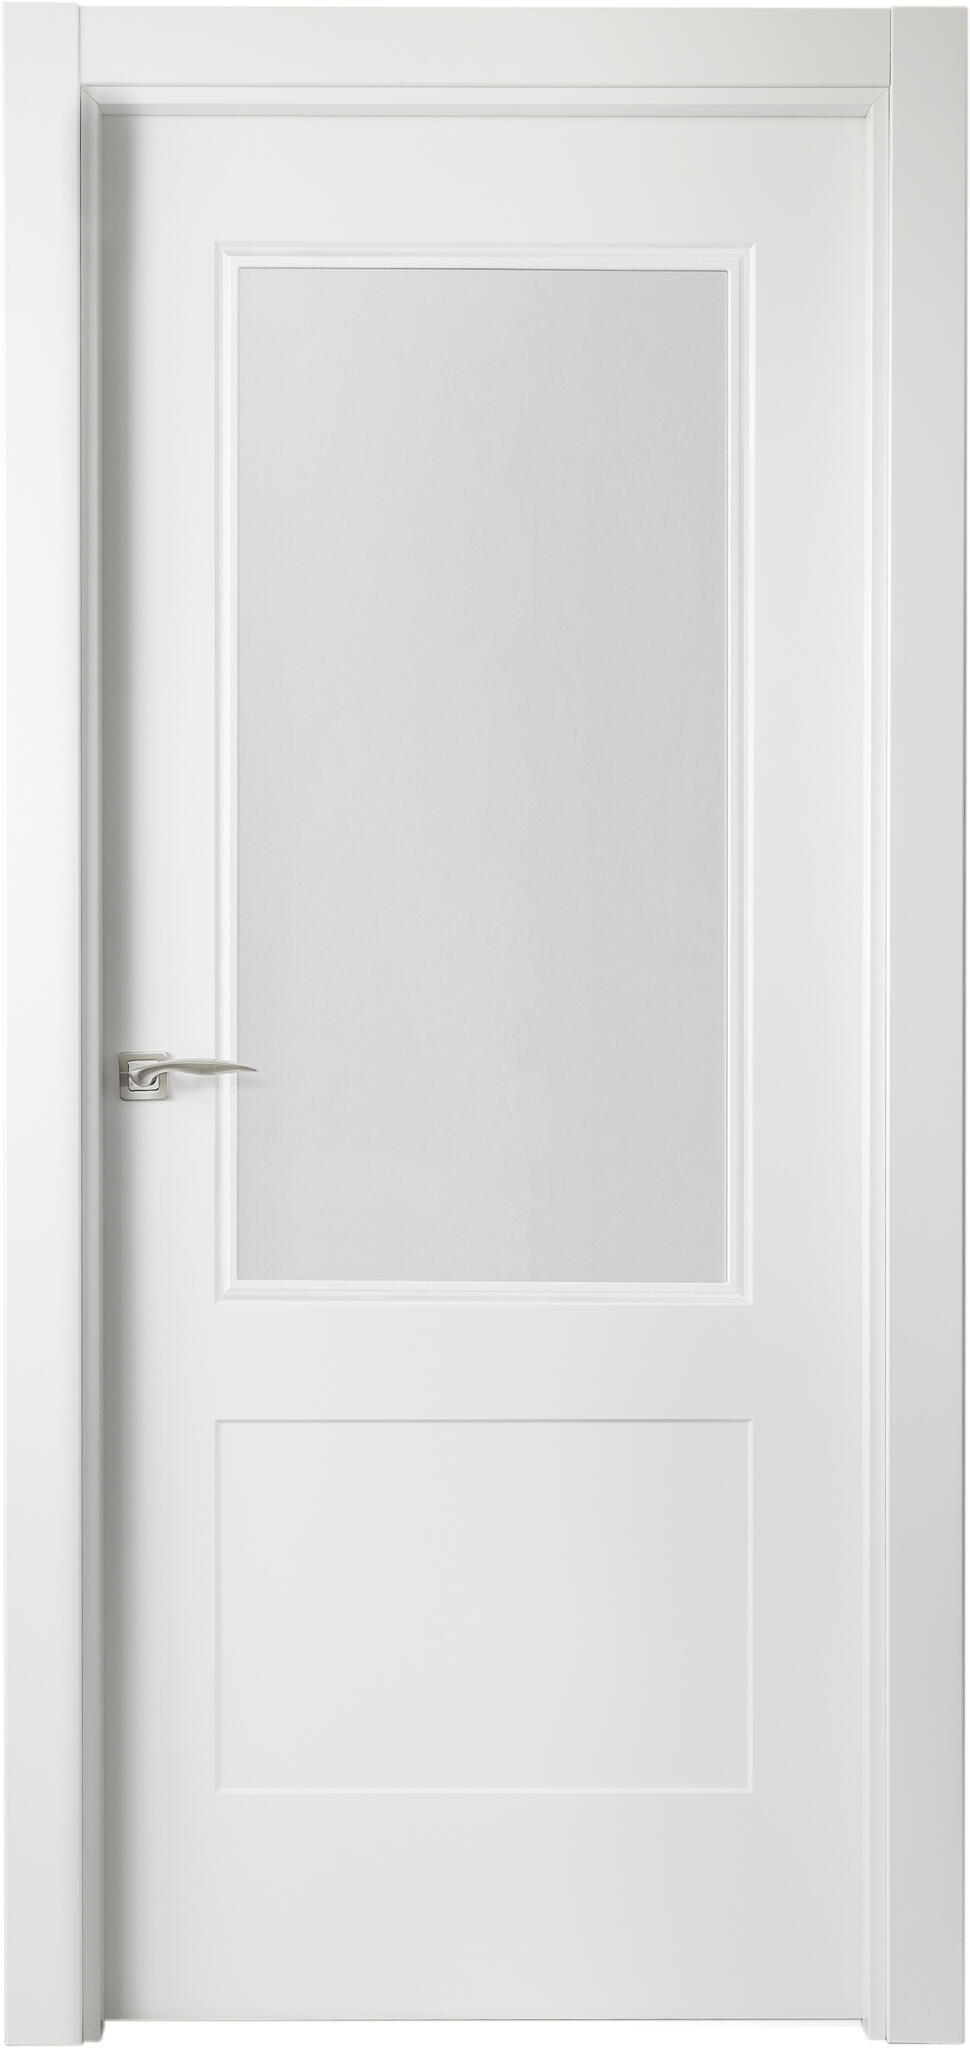 Puerta atlanta plus blanco apertura derecha con cristal 11x82,5cm